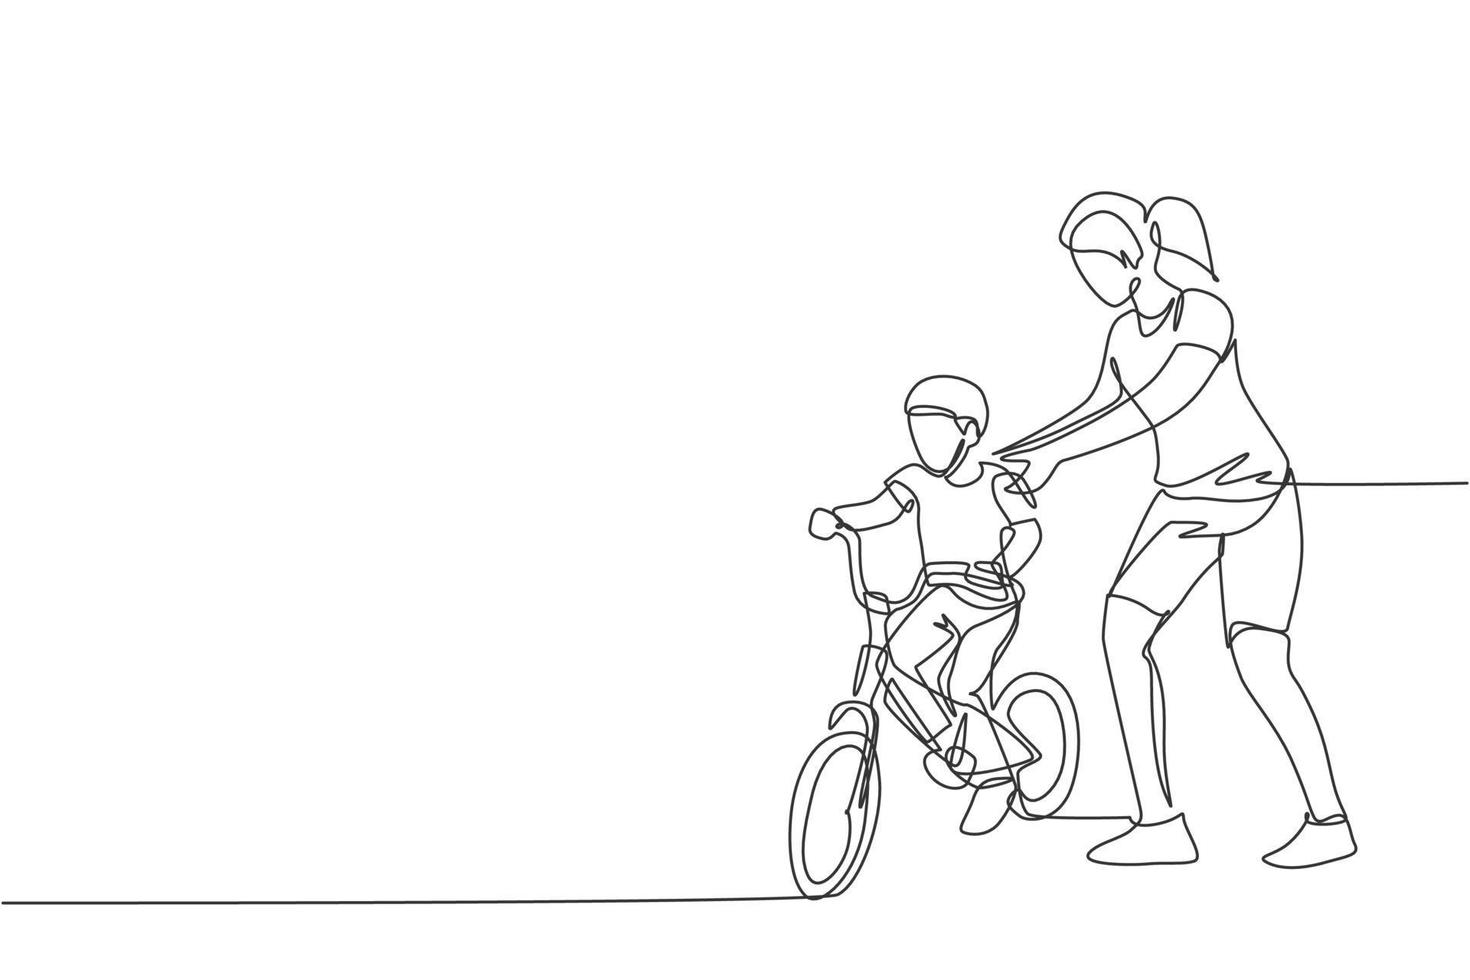 Incorrecto postre error dibujo de línea continua única de niños pequeños aprendiendo a andar en  bicicleta con su madre